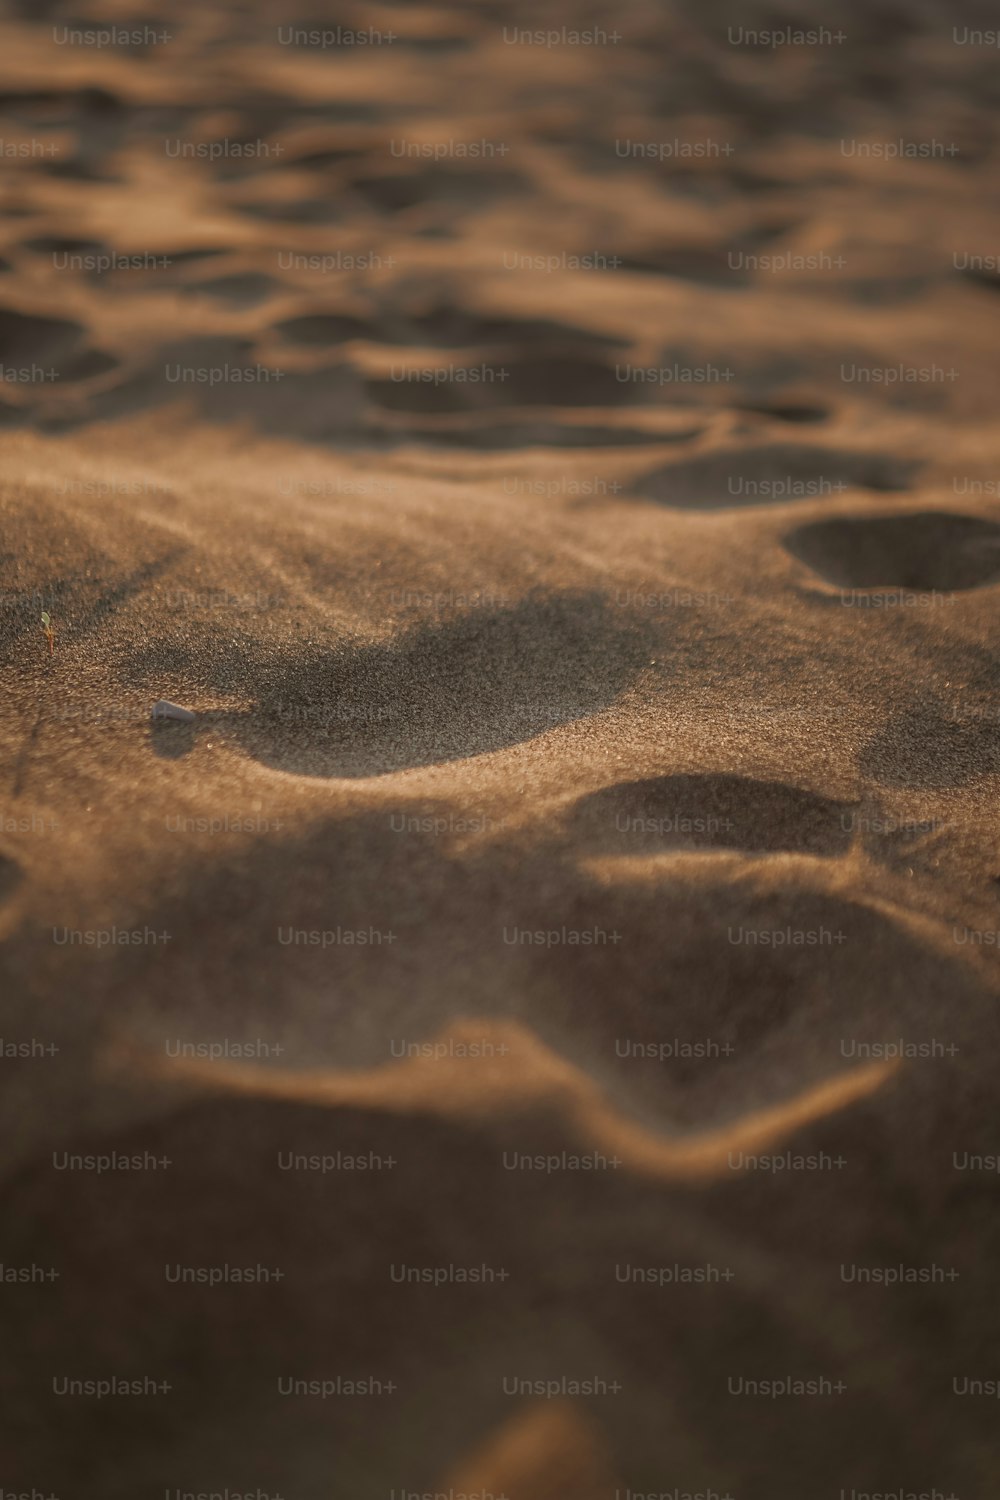 impronte nella sabbia di una spiaggia sabbiosa